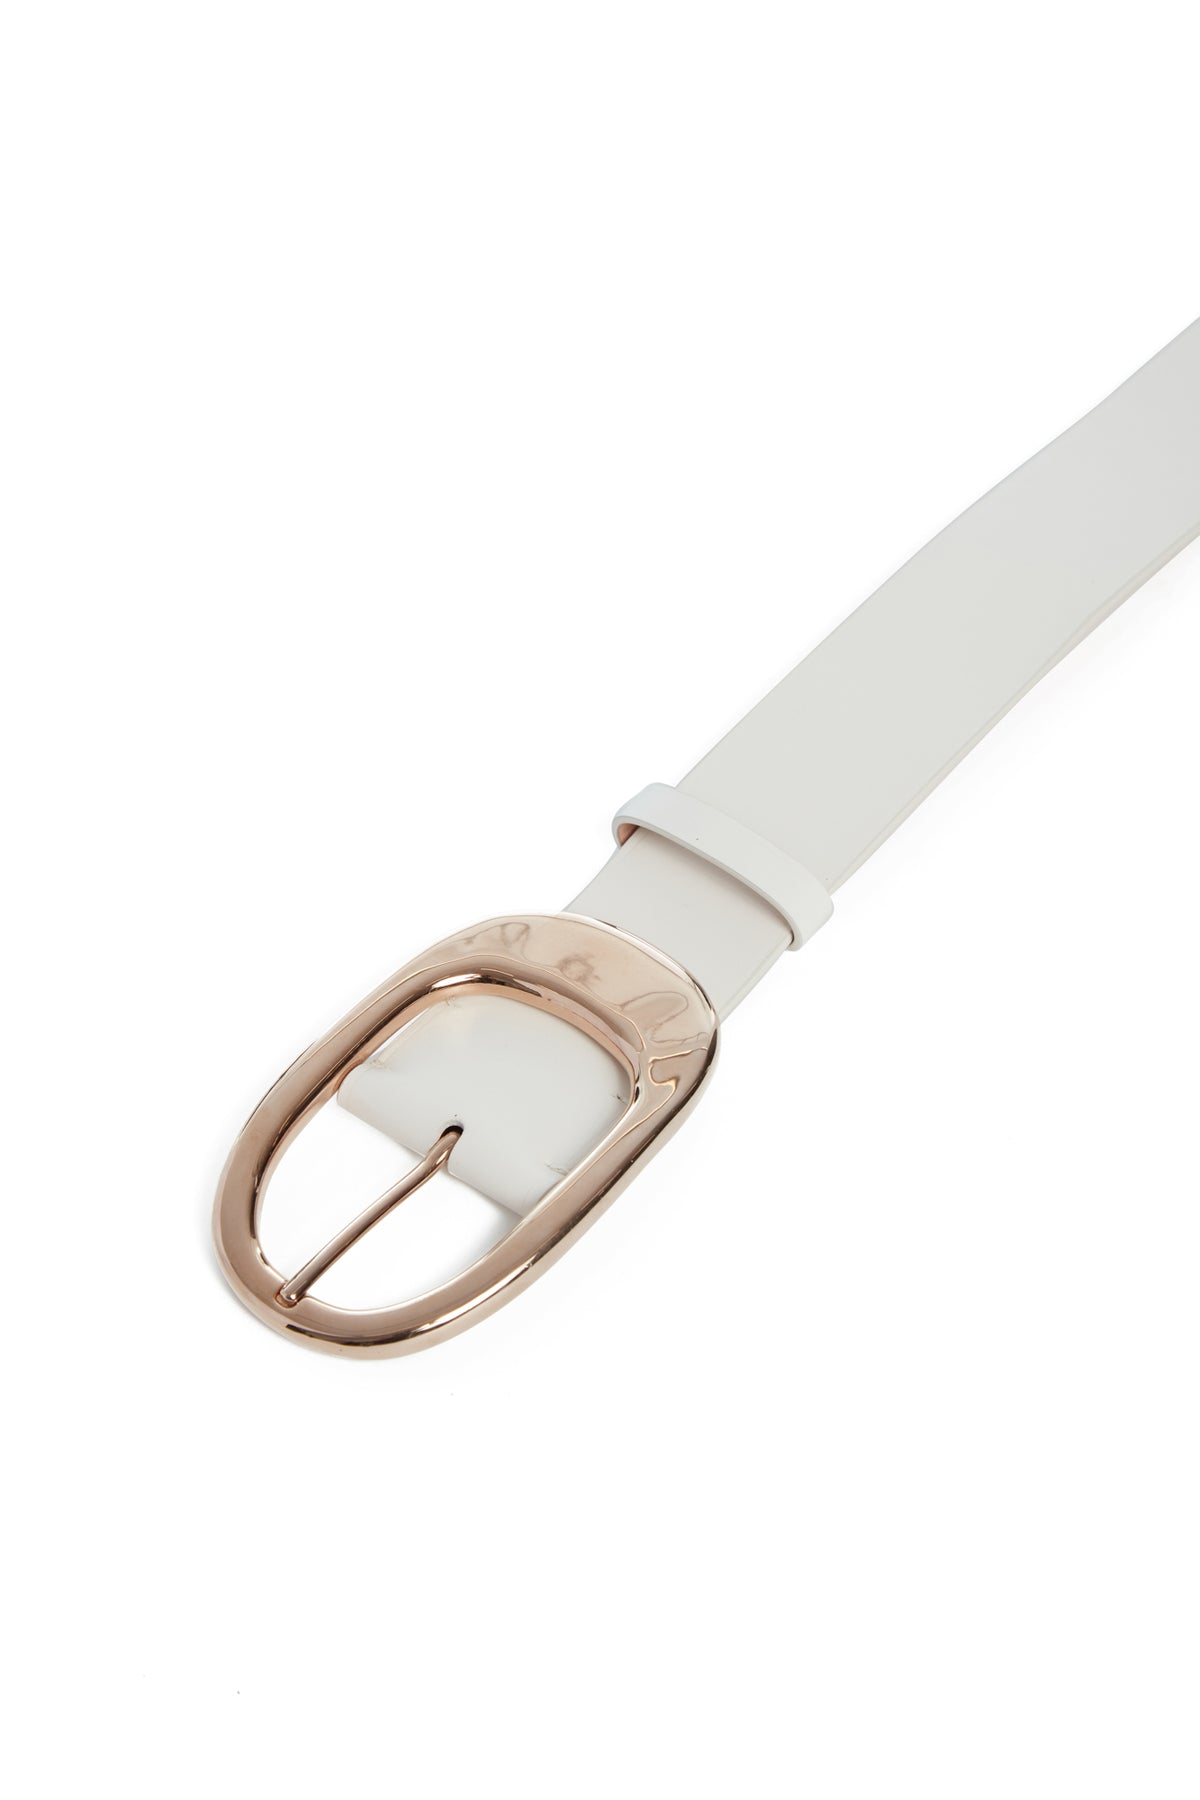 Lozewce Belt in White Leather